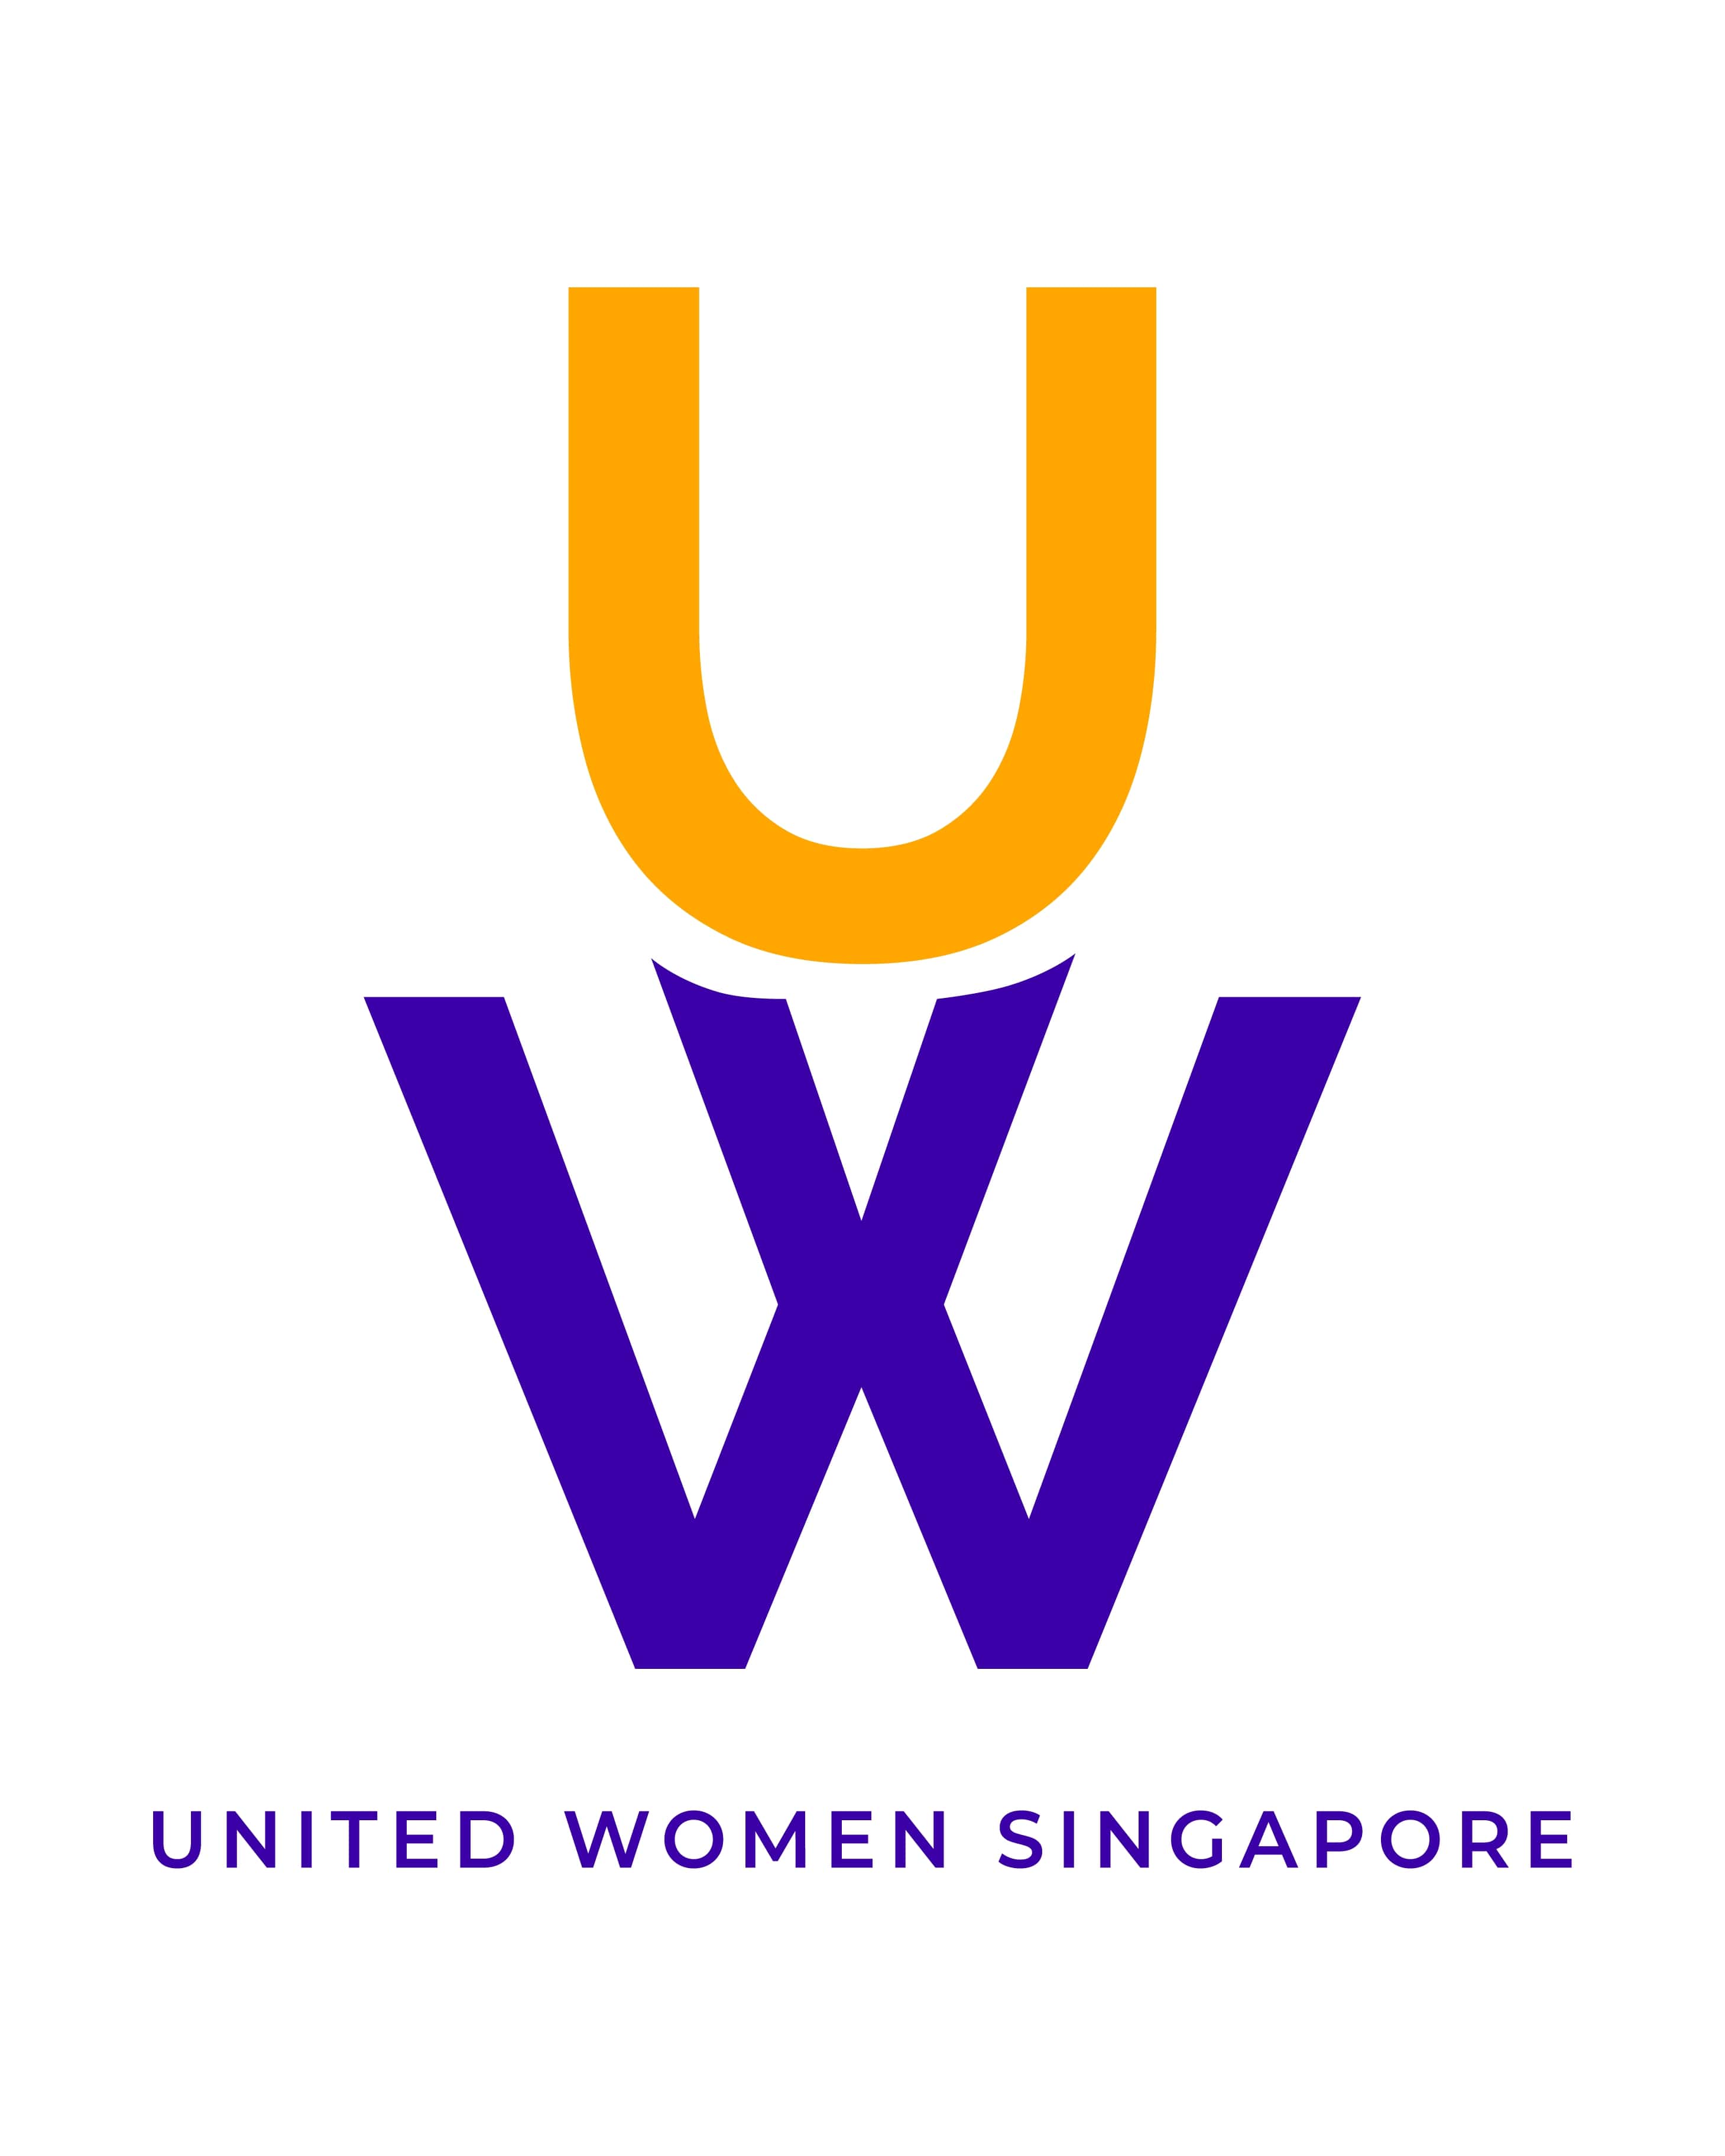 United Women Singapore logo